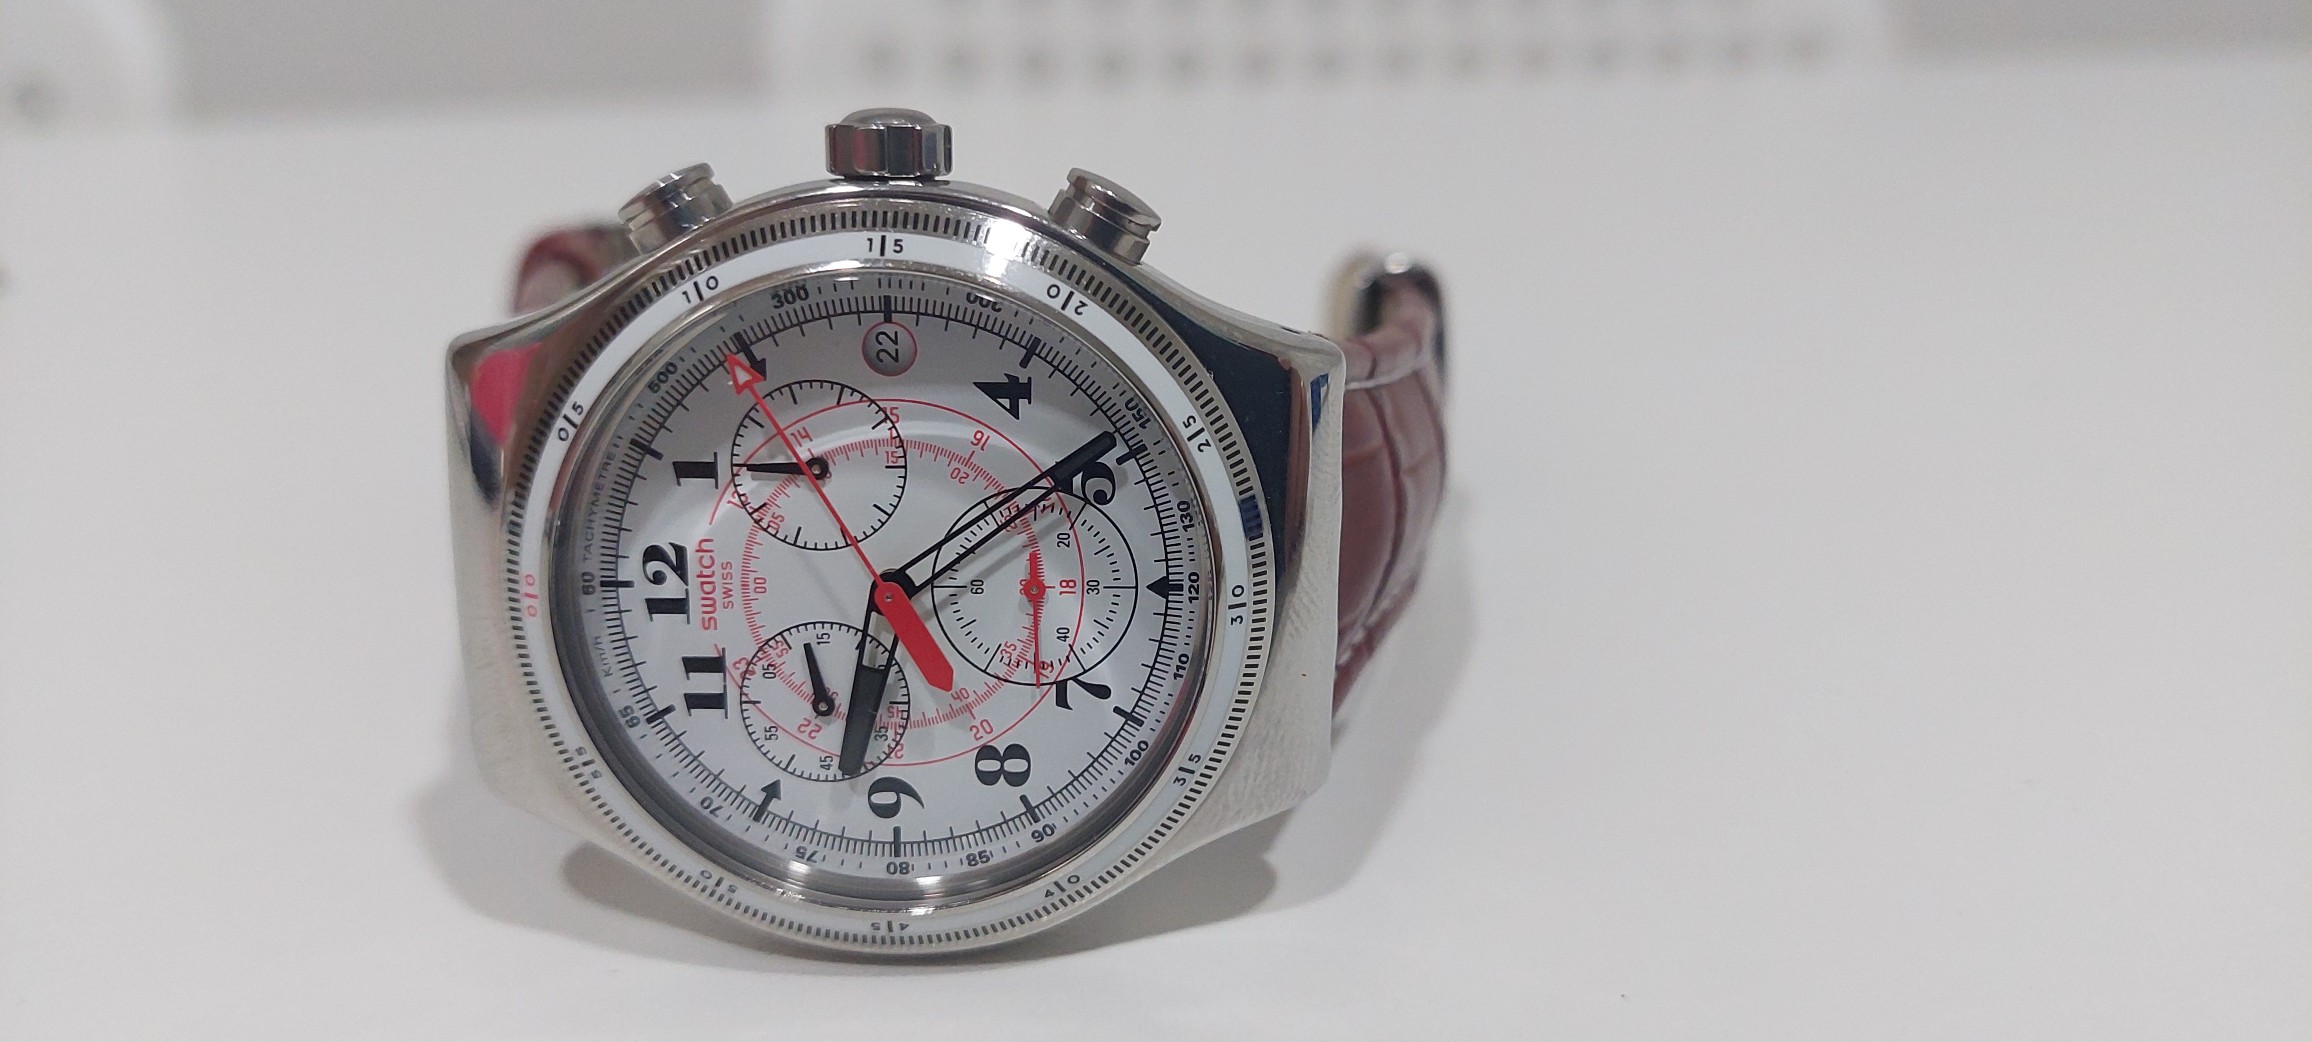 joyas, relojes y accesorios - Reloj swatch nuevo